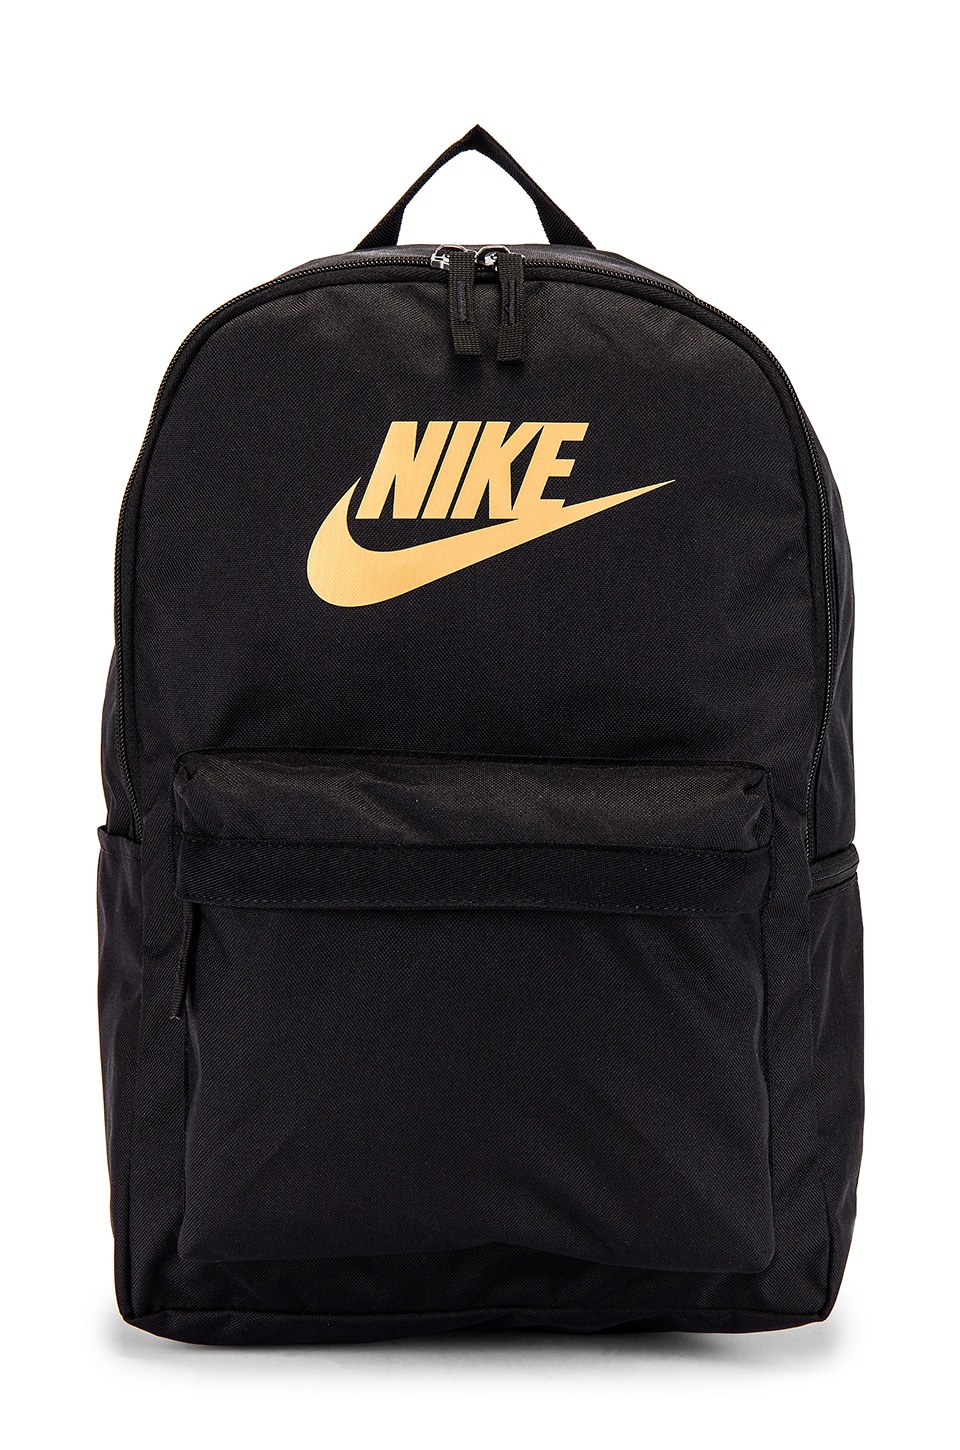 Nike Nk Heritage Backpack 2.0 in Black 